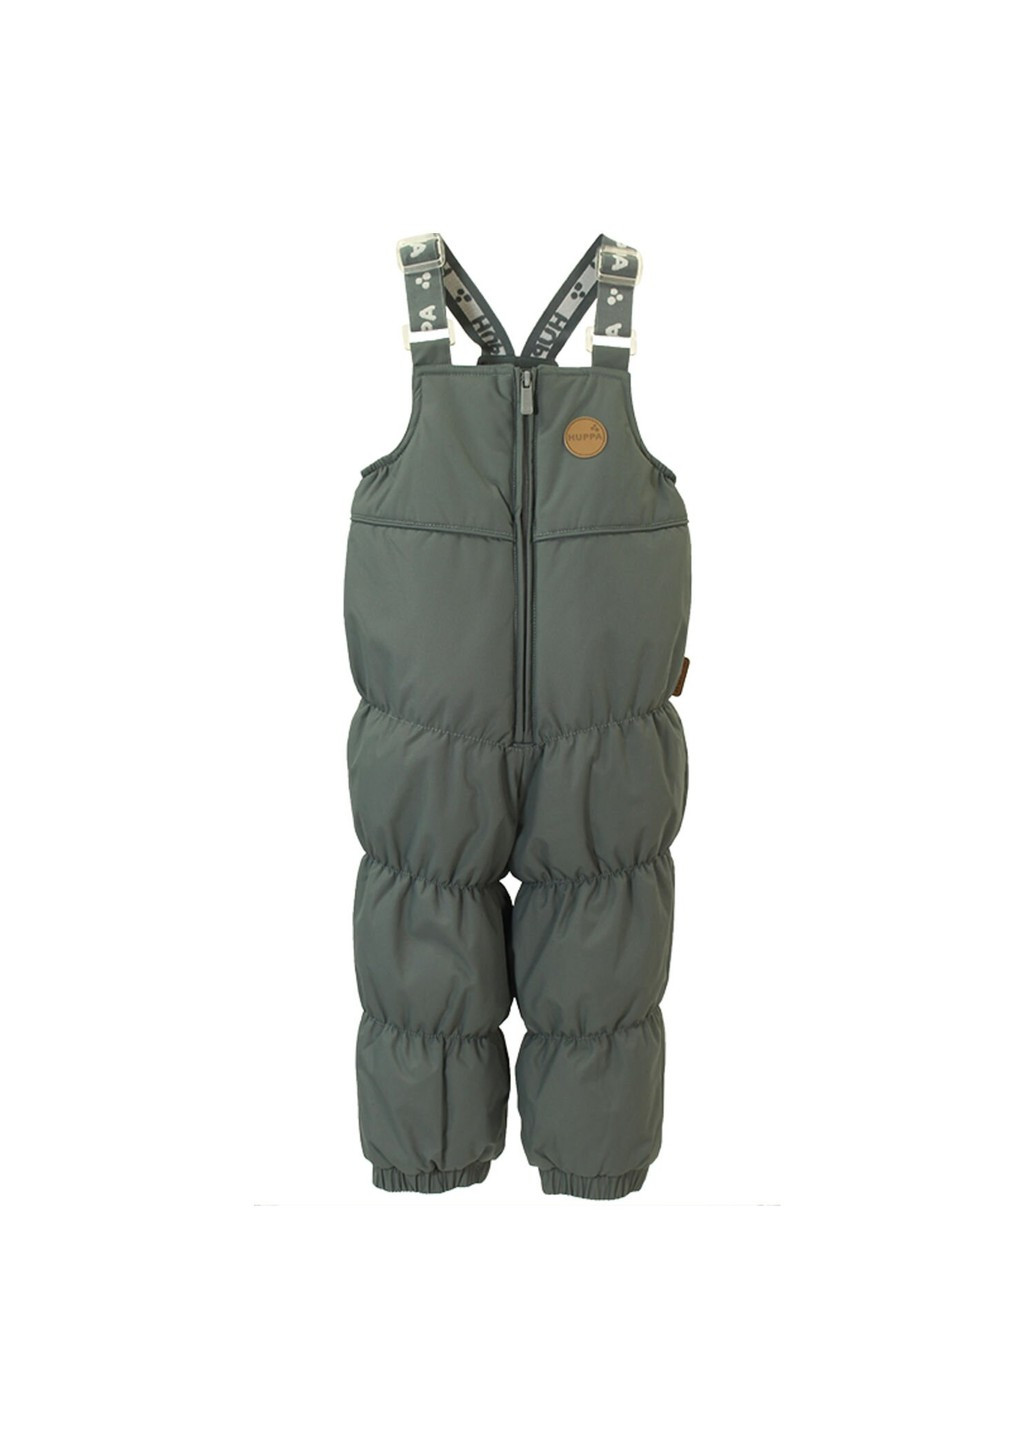 Мятный зимний комплект зимний (куртка + полукомбинезон) novalla Huppa